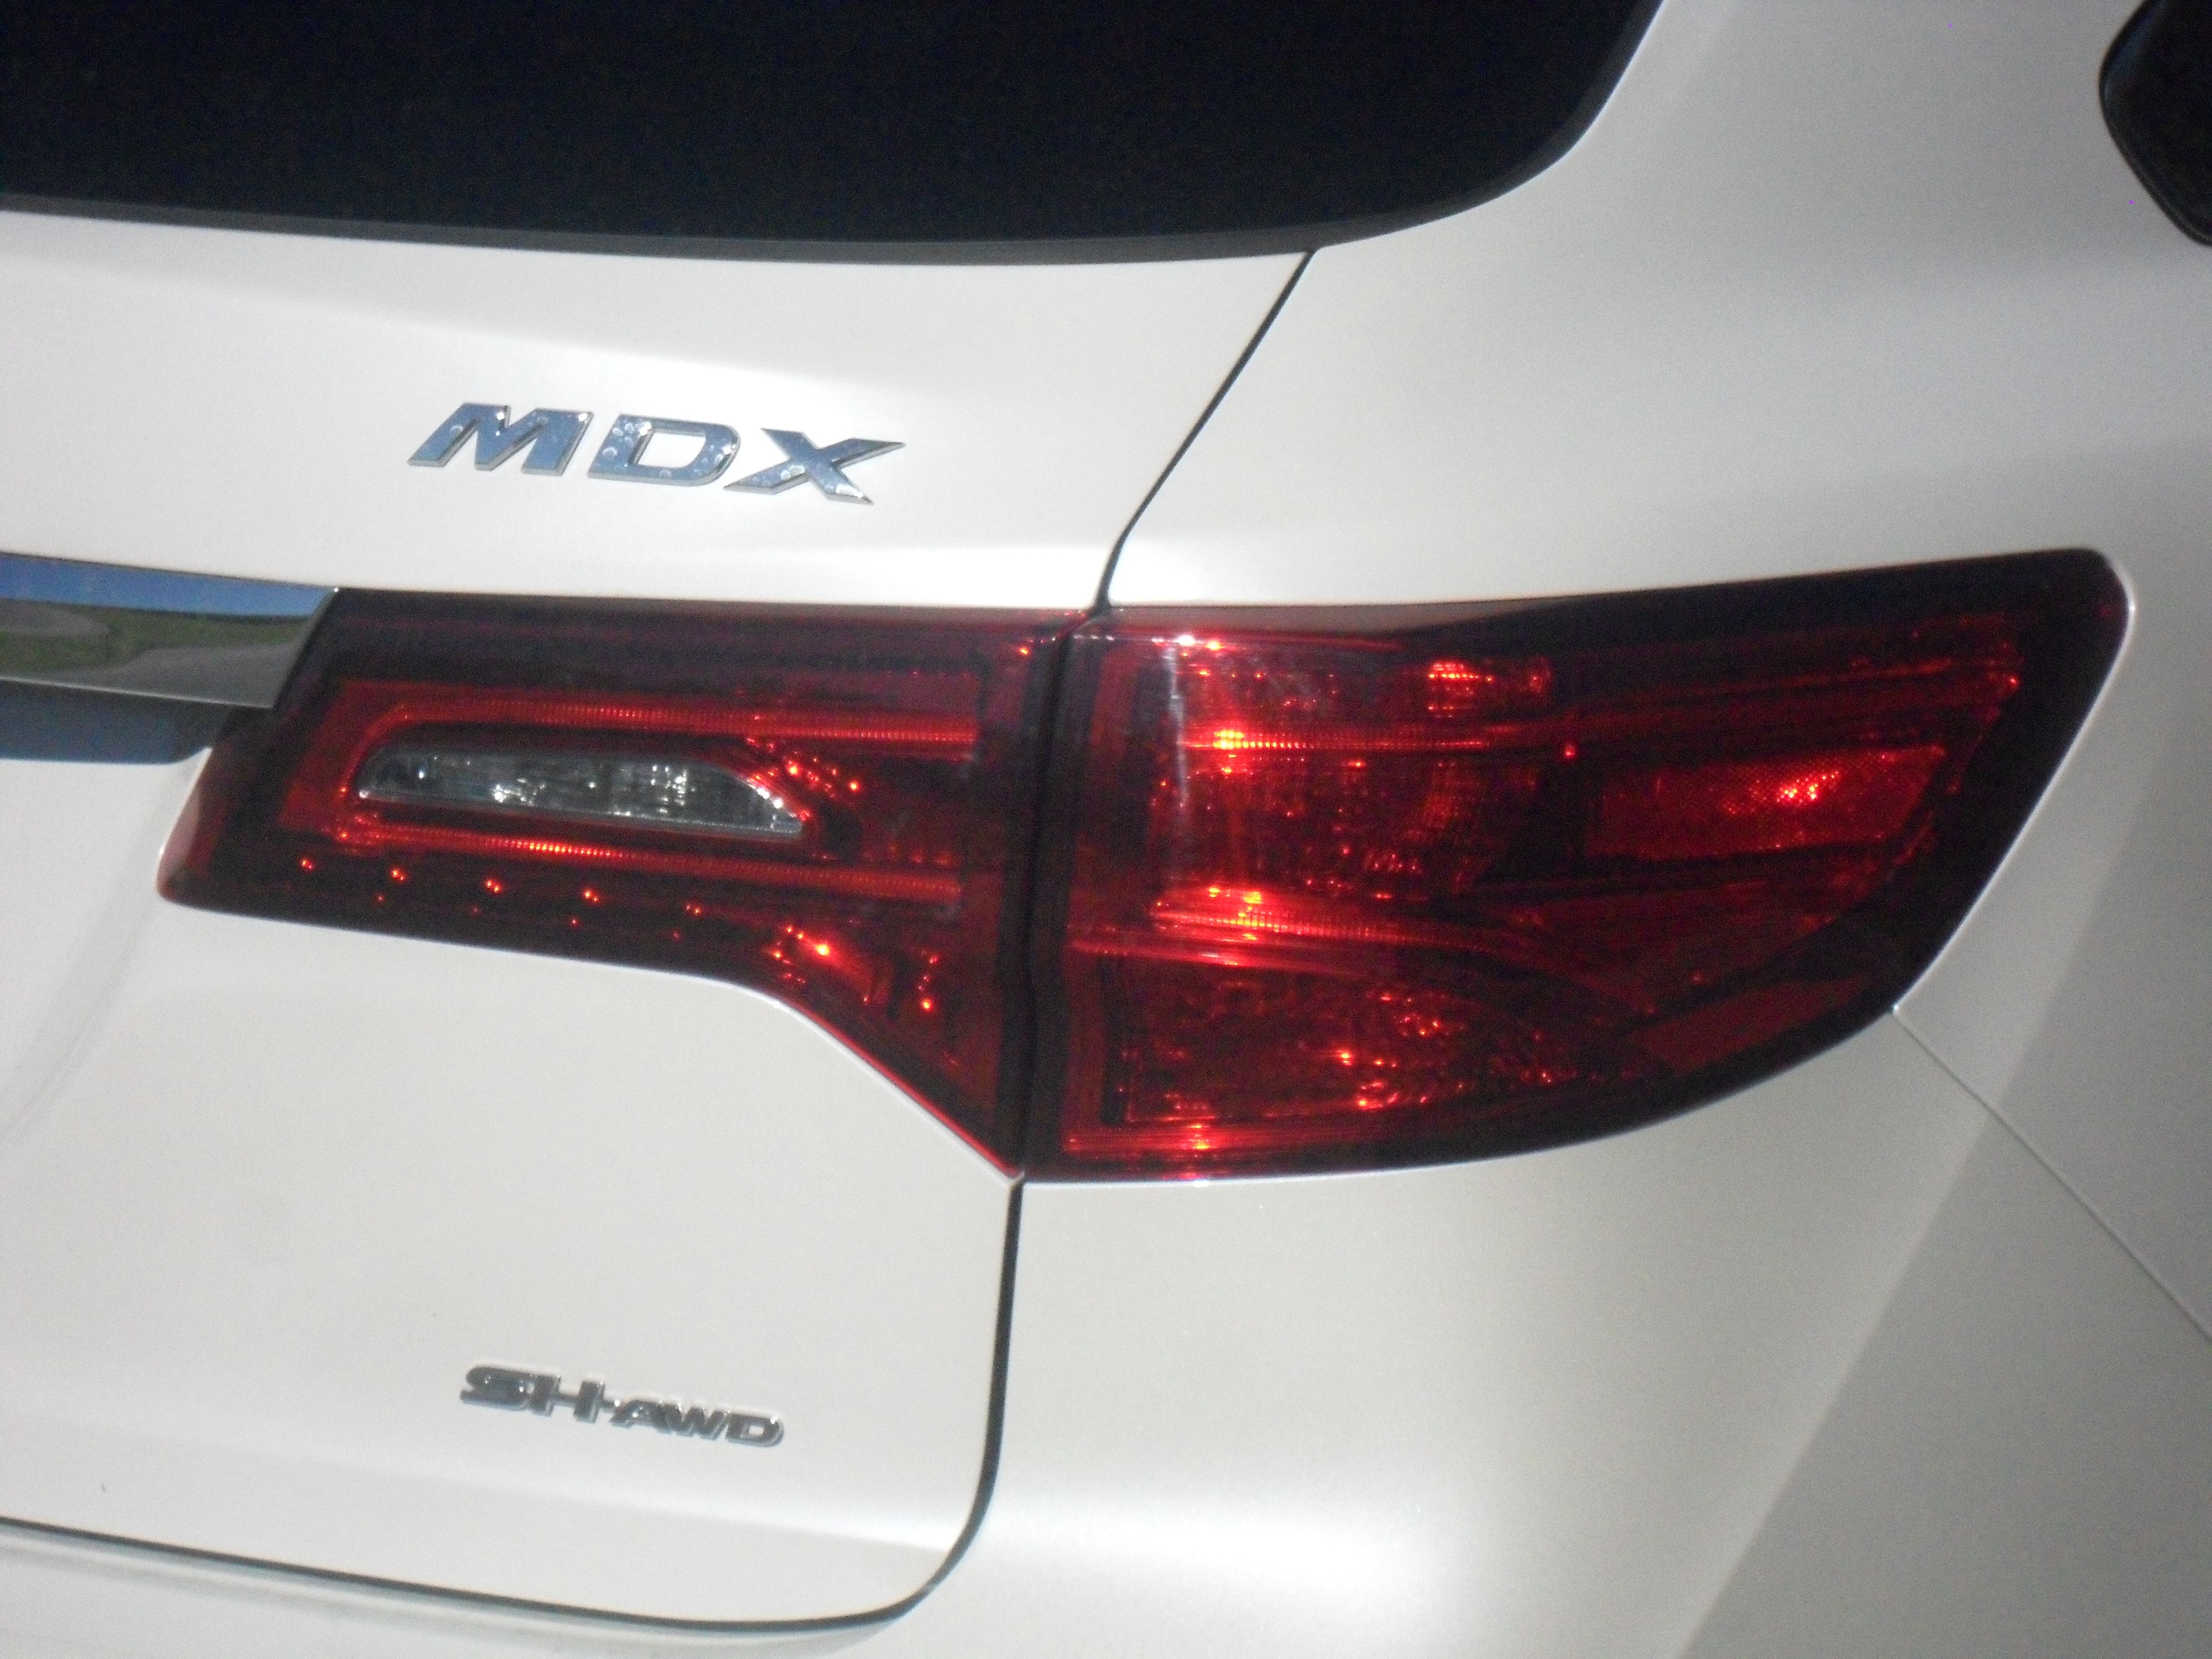 2014 Acura MDX - Driven